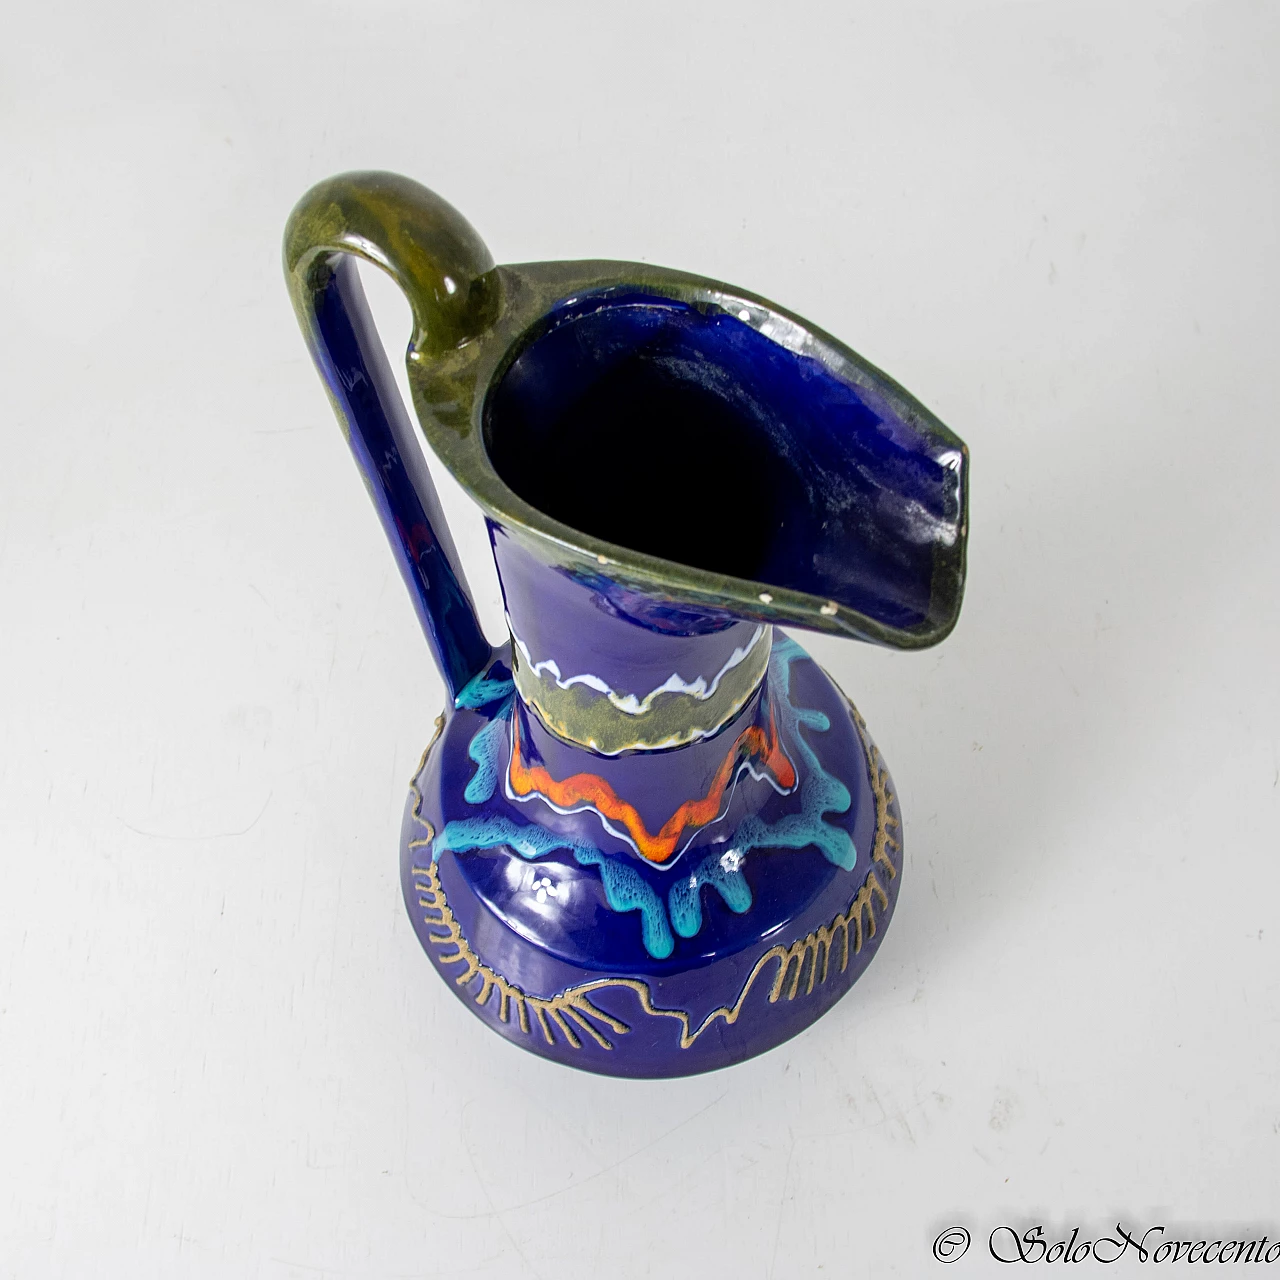 Glazed ceramic pitcher by Roberto Rigon, 1960s 1223934